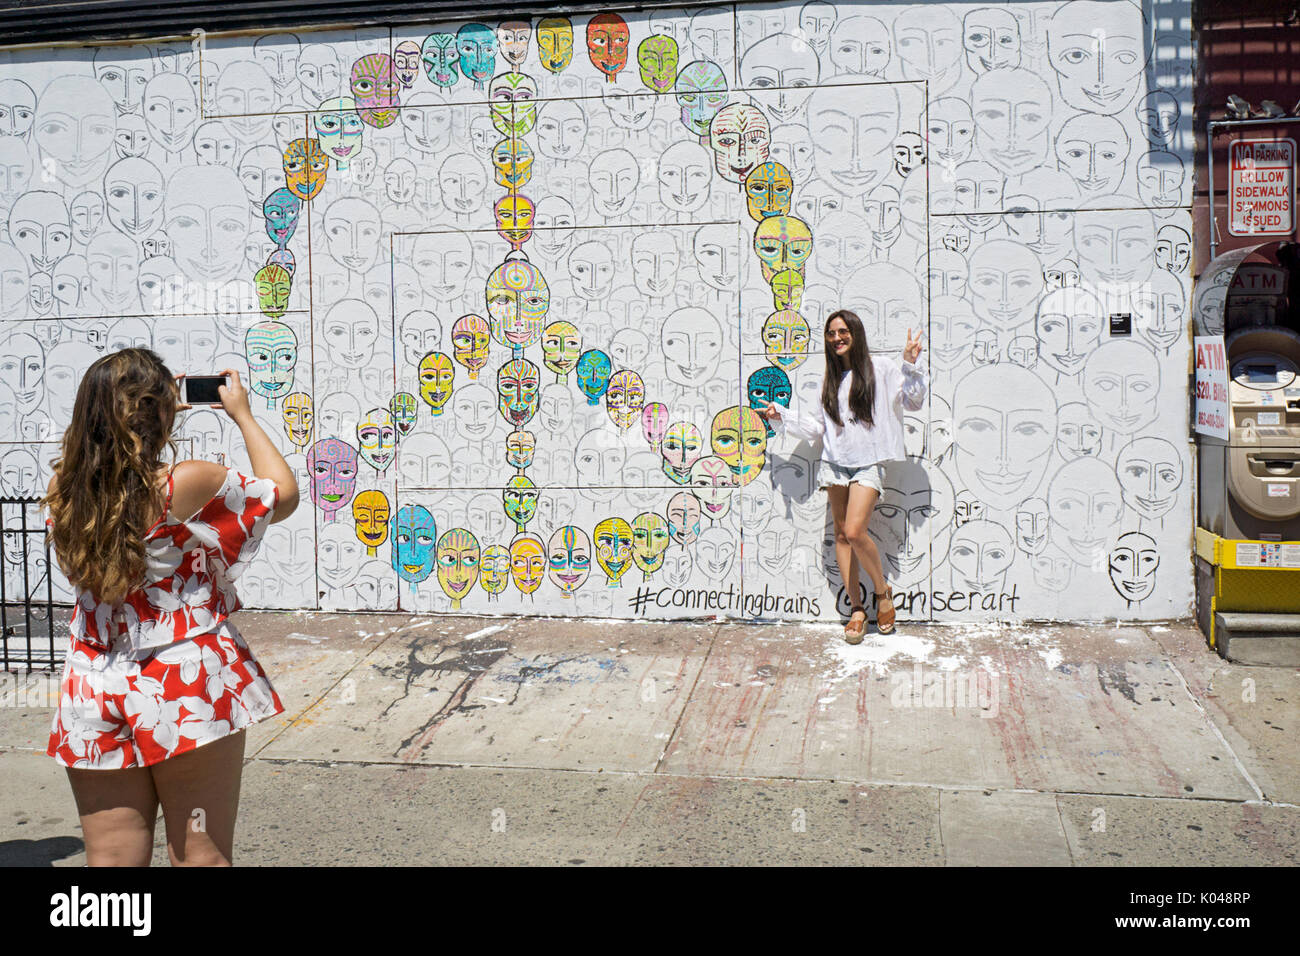 Zwei Frauen, vermutlich Touristen, Fotos machen vor einer Graffiti-wand der Kenmare Street Ecke von Mott in der nolita Teil von Downtown NEW YORK CITY. Stockfoto